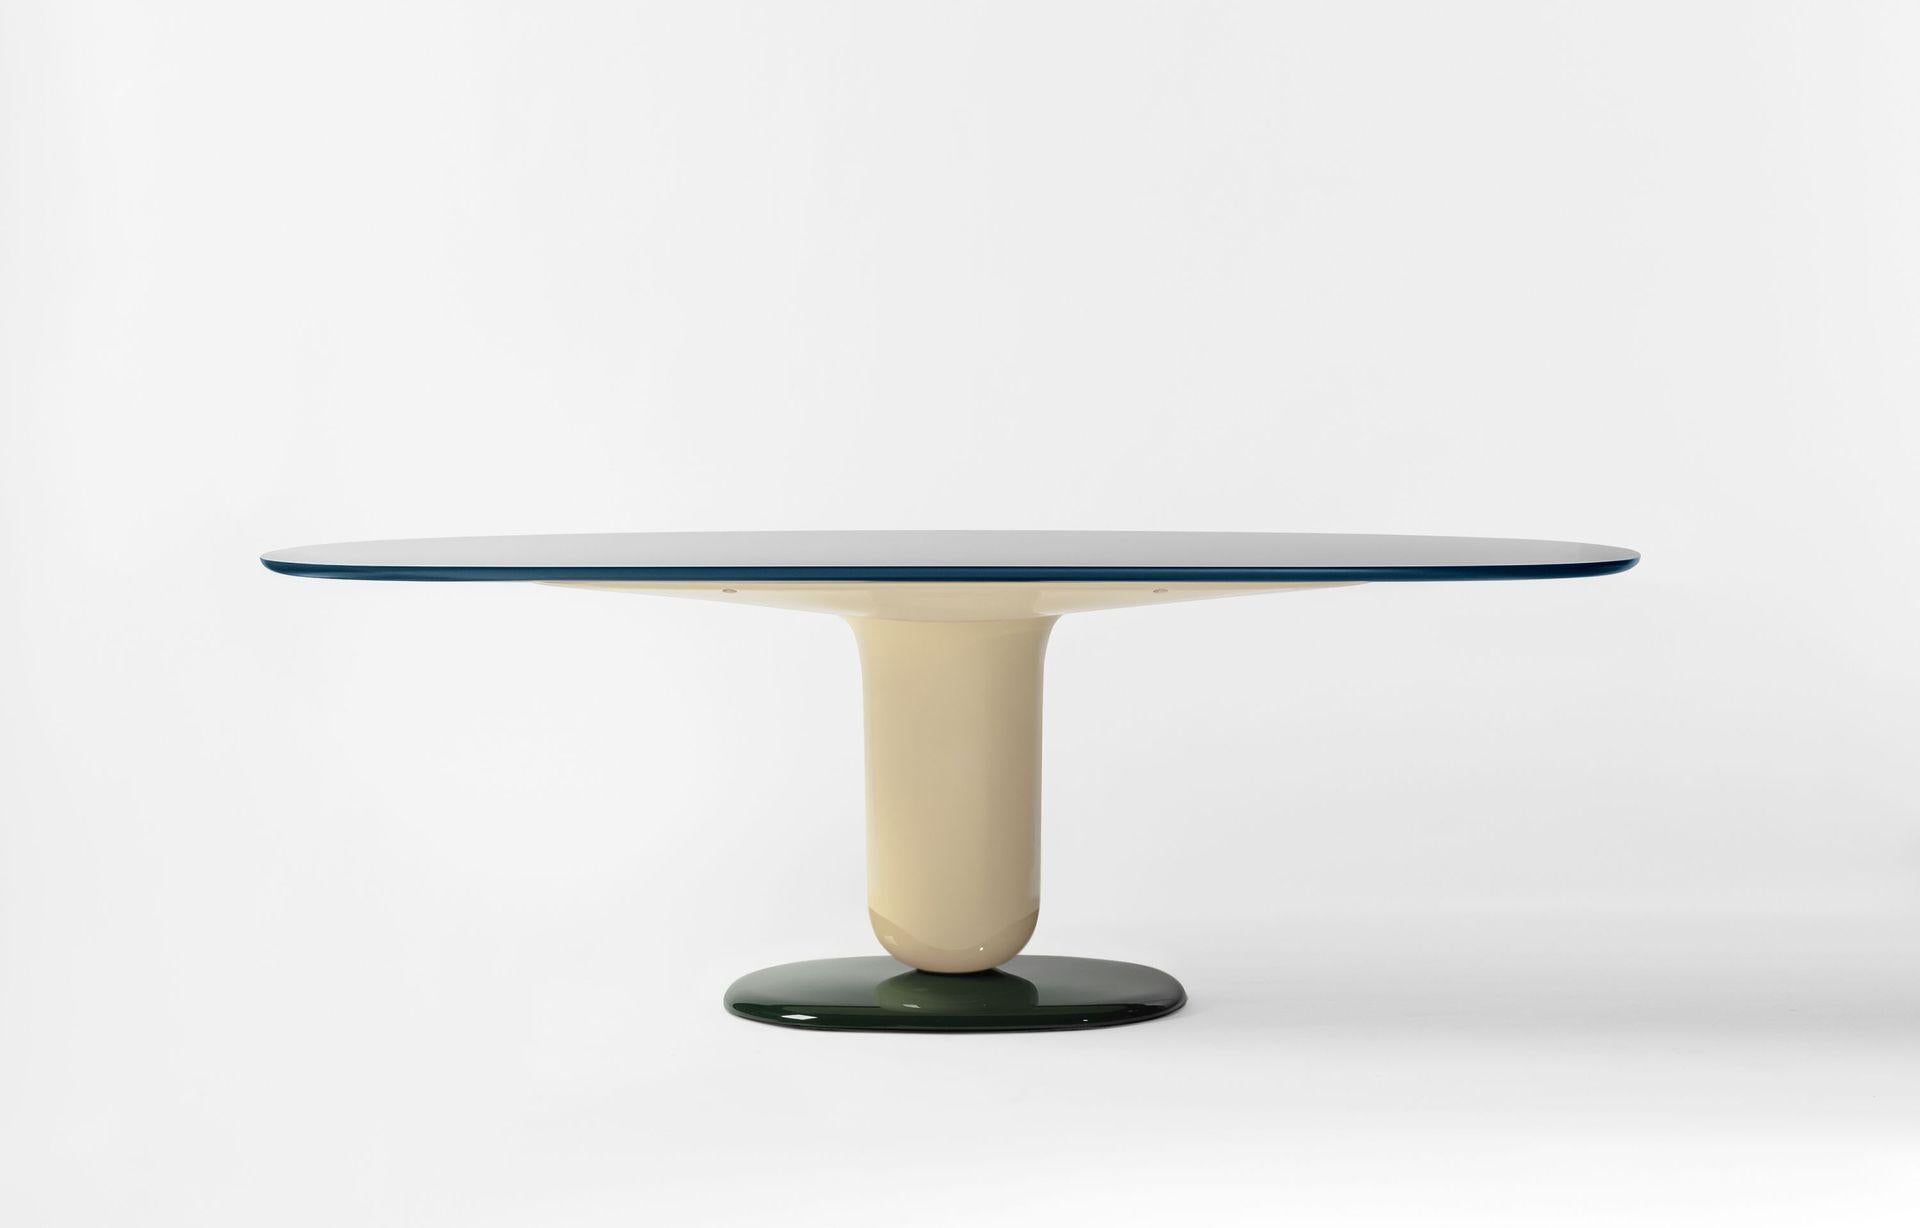 Der von Jaime Hayon im Jahr 2021 entworfene Tisch ergänzt die Explorer-Kollektion, die 2019 eingeführt wurde.
Hergestellt von BD Barcelona in Spanien.

Als Fortsetzung der verspielten Explorer Tischserie und in Anlehnung an ihre elegante